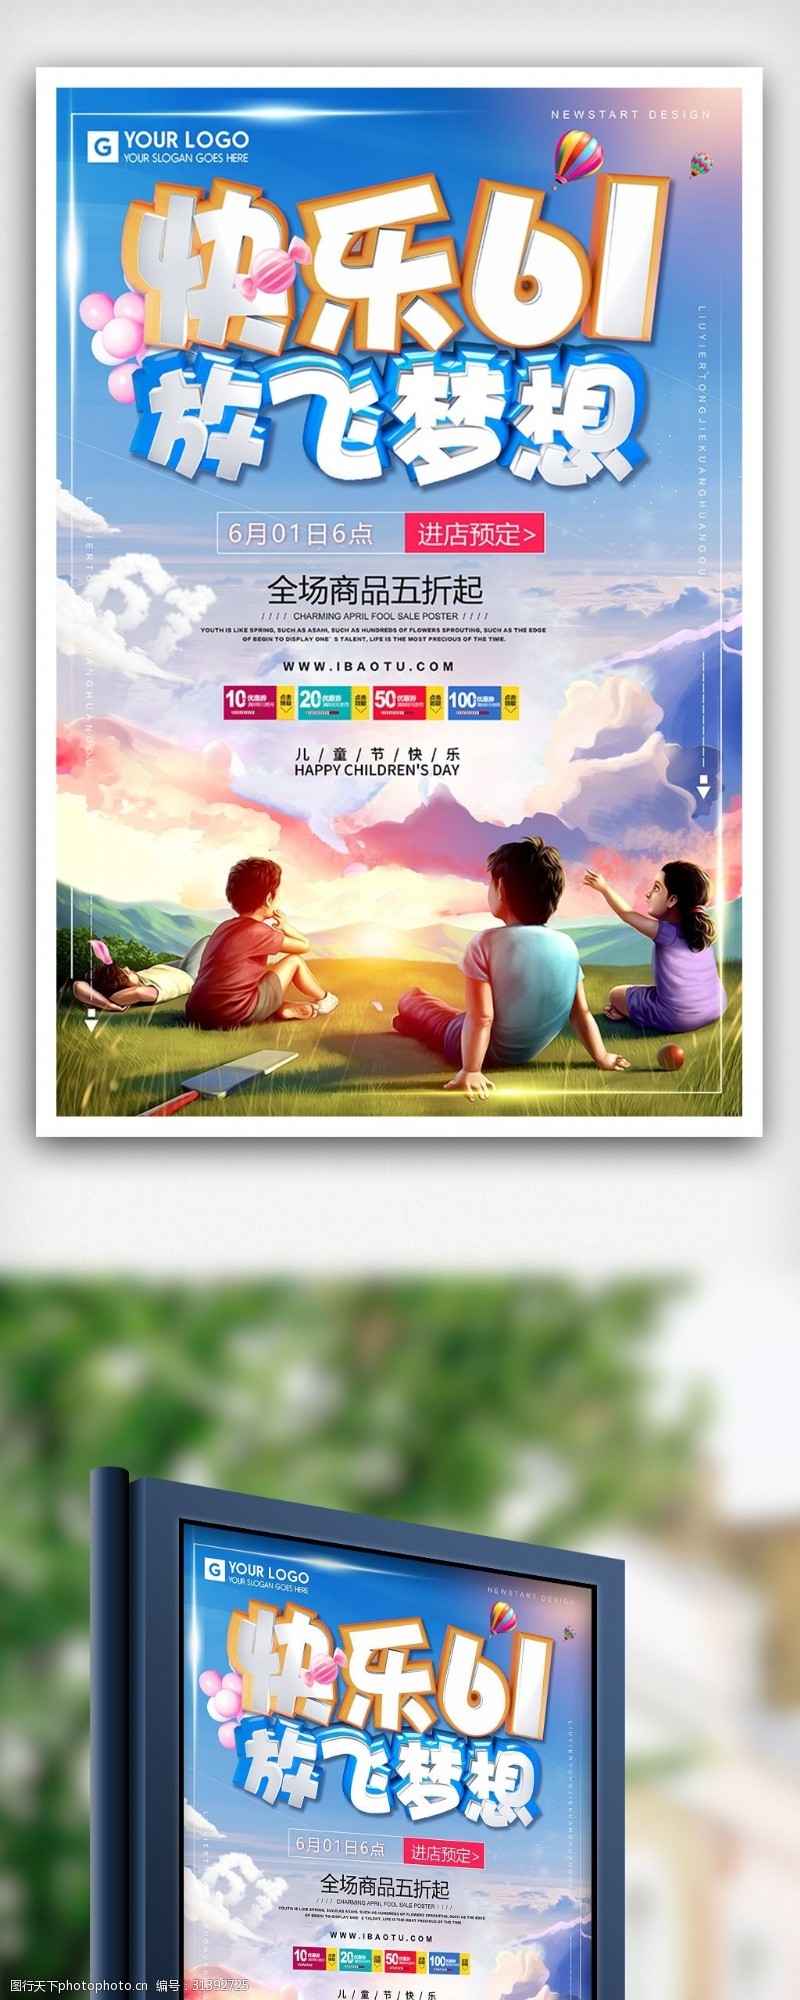 特价图片免费下载快乐六一儿童节特价促销海报